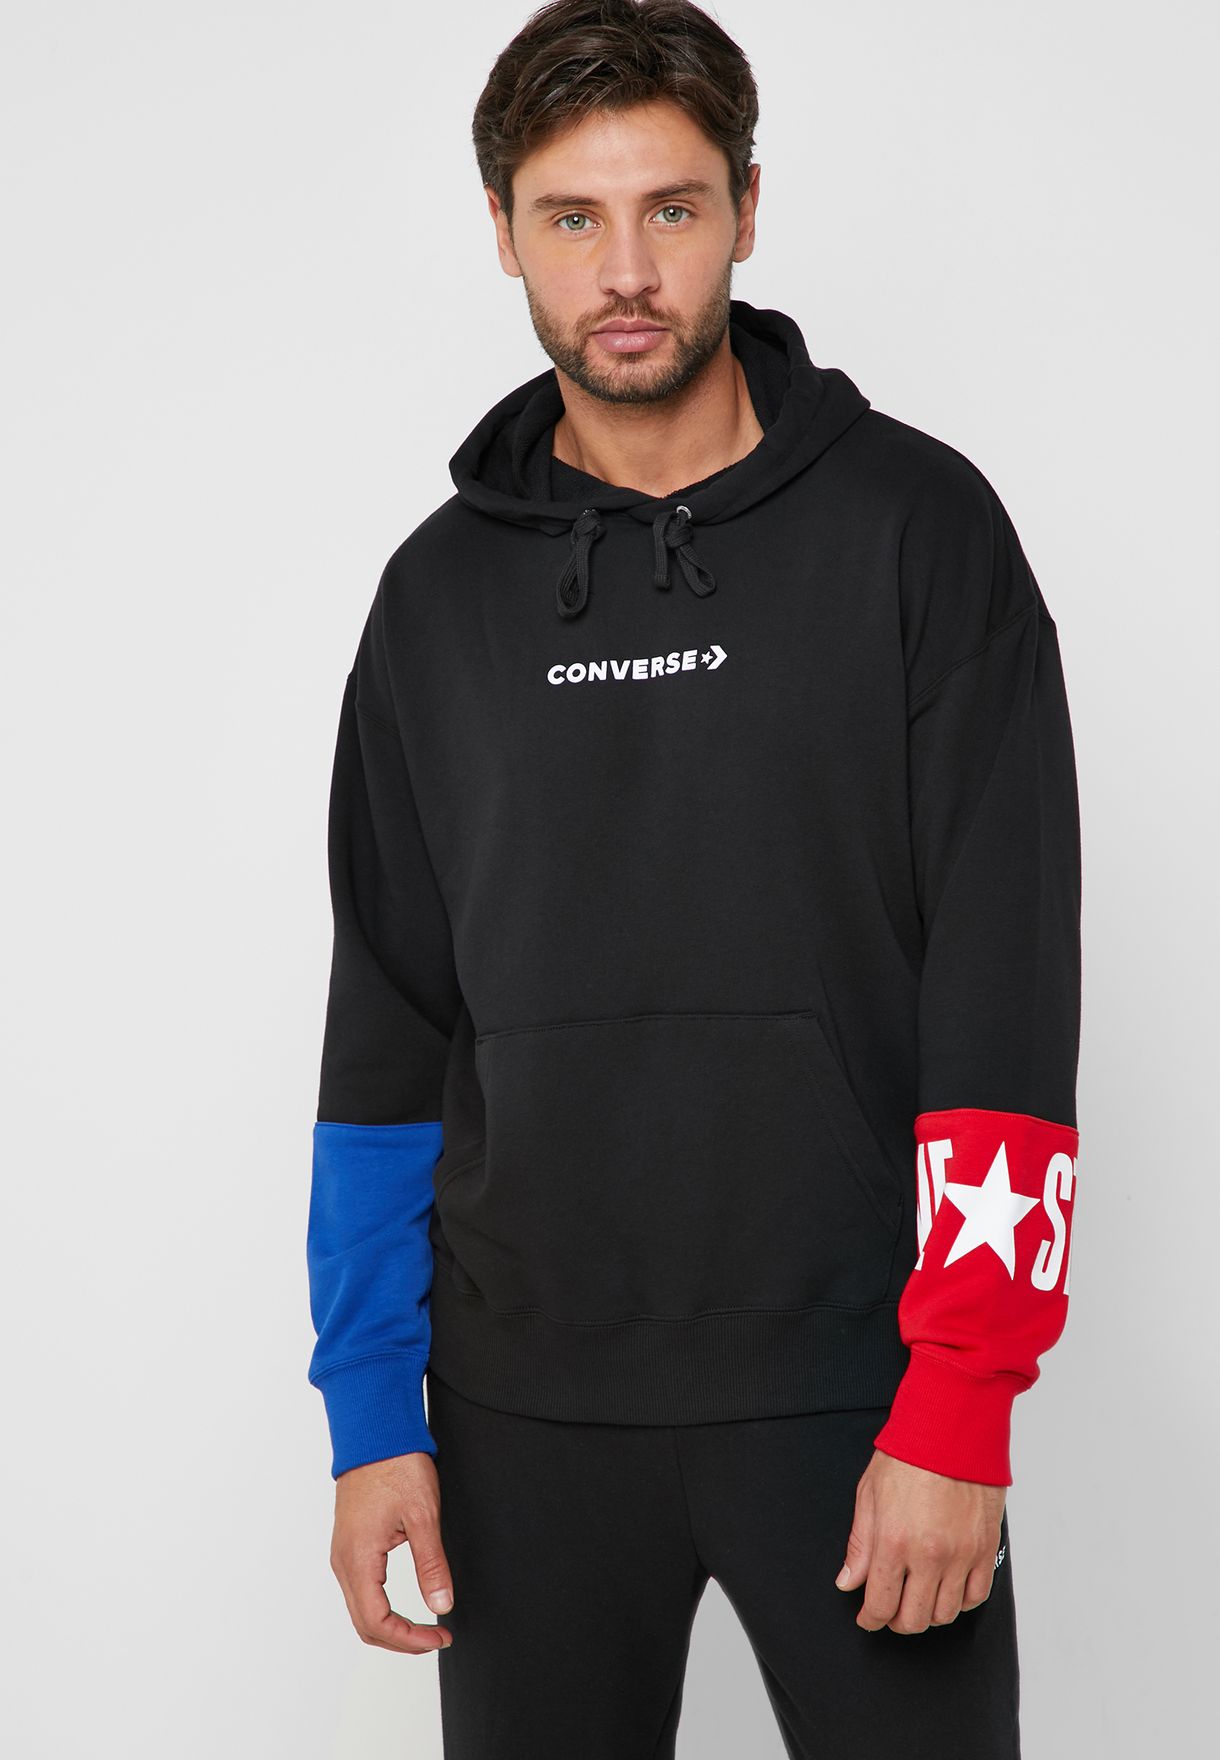 converse one star zip up hoodie